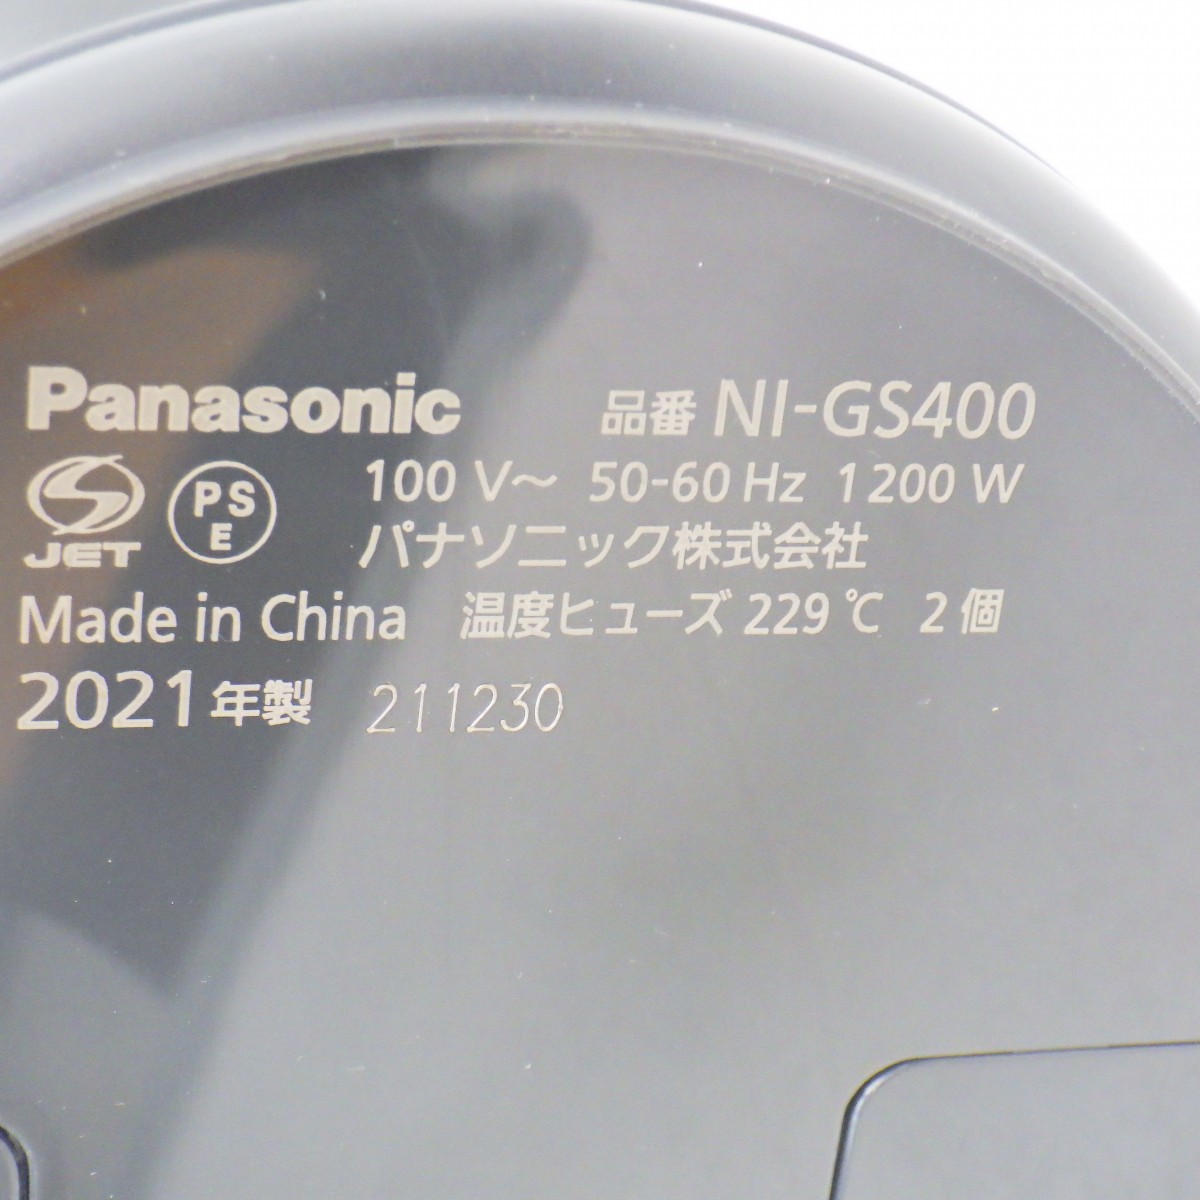 panasonic одежда отпариватель NI-GS400/2021 год производства / Panasonic / рабочее состояние подтверждено 80